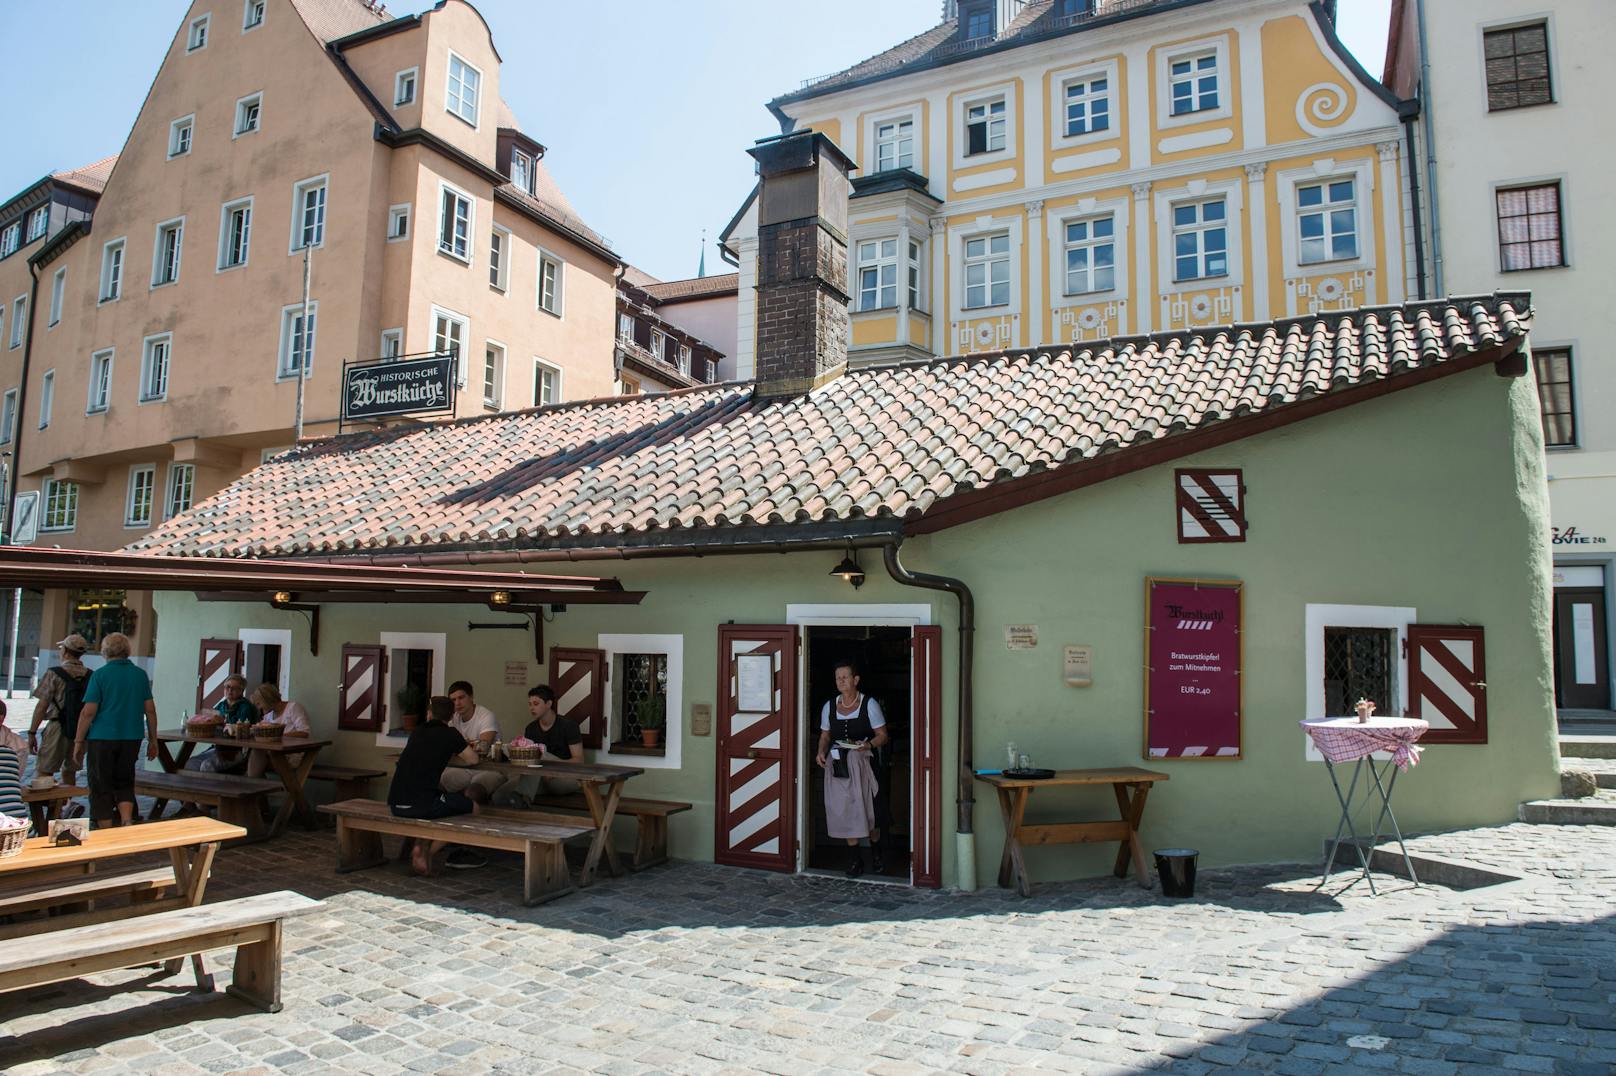 <strong>Wurstkuchl, Regensburg, Deutschland</strong>: Die Wurstkuchl im bayrischen Regensburg ist die älteste Bratwurststube der Welt. Seit 1146 steht das Restaurant an seinem Platz. Einst speisten im Wurstkuchl Steinmetze und Hafenarbeiter, heute sind die Holzkohle-Grillwürste weltberühmt.